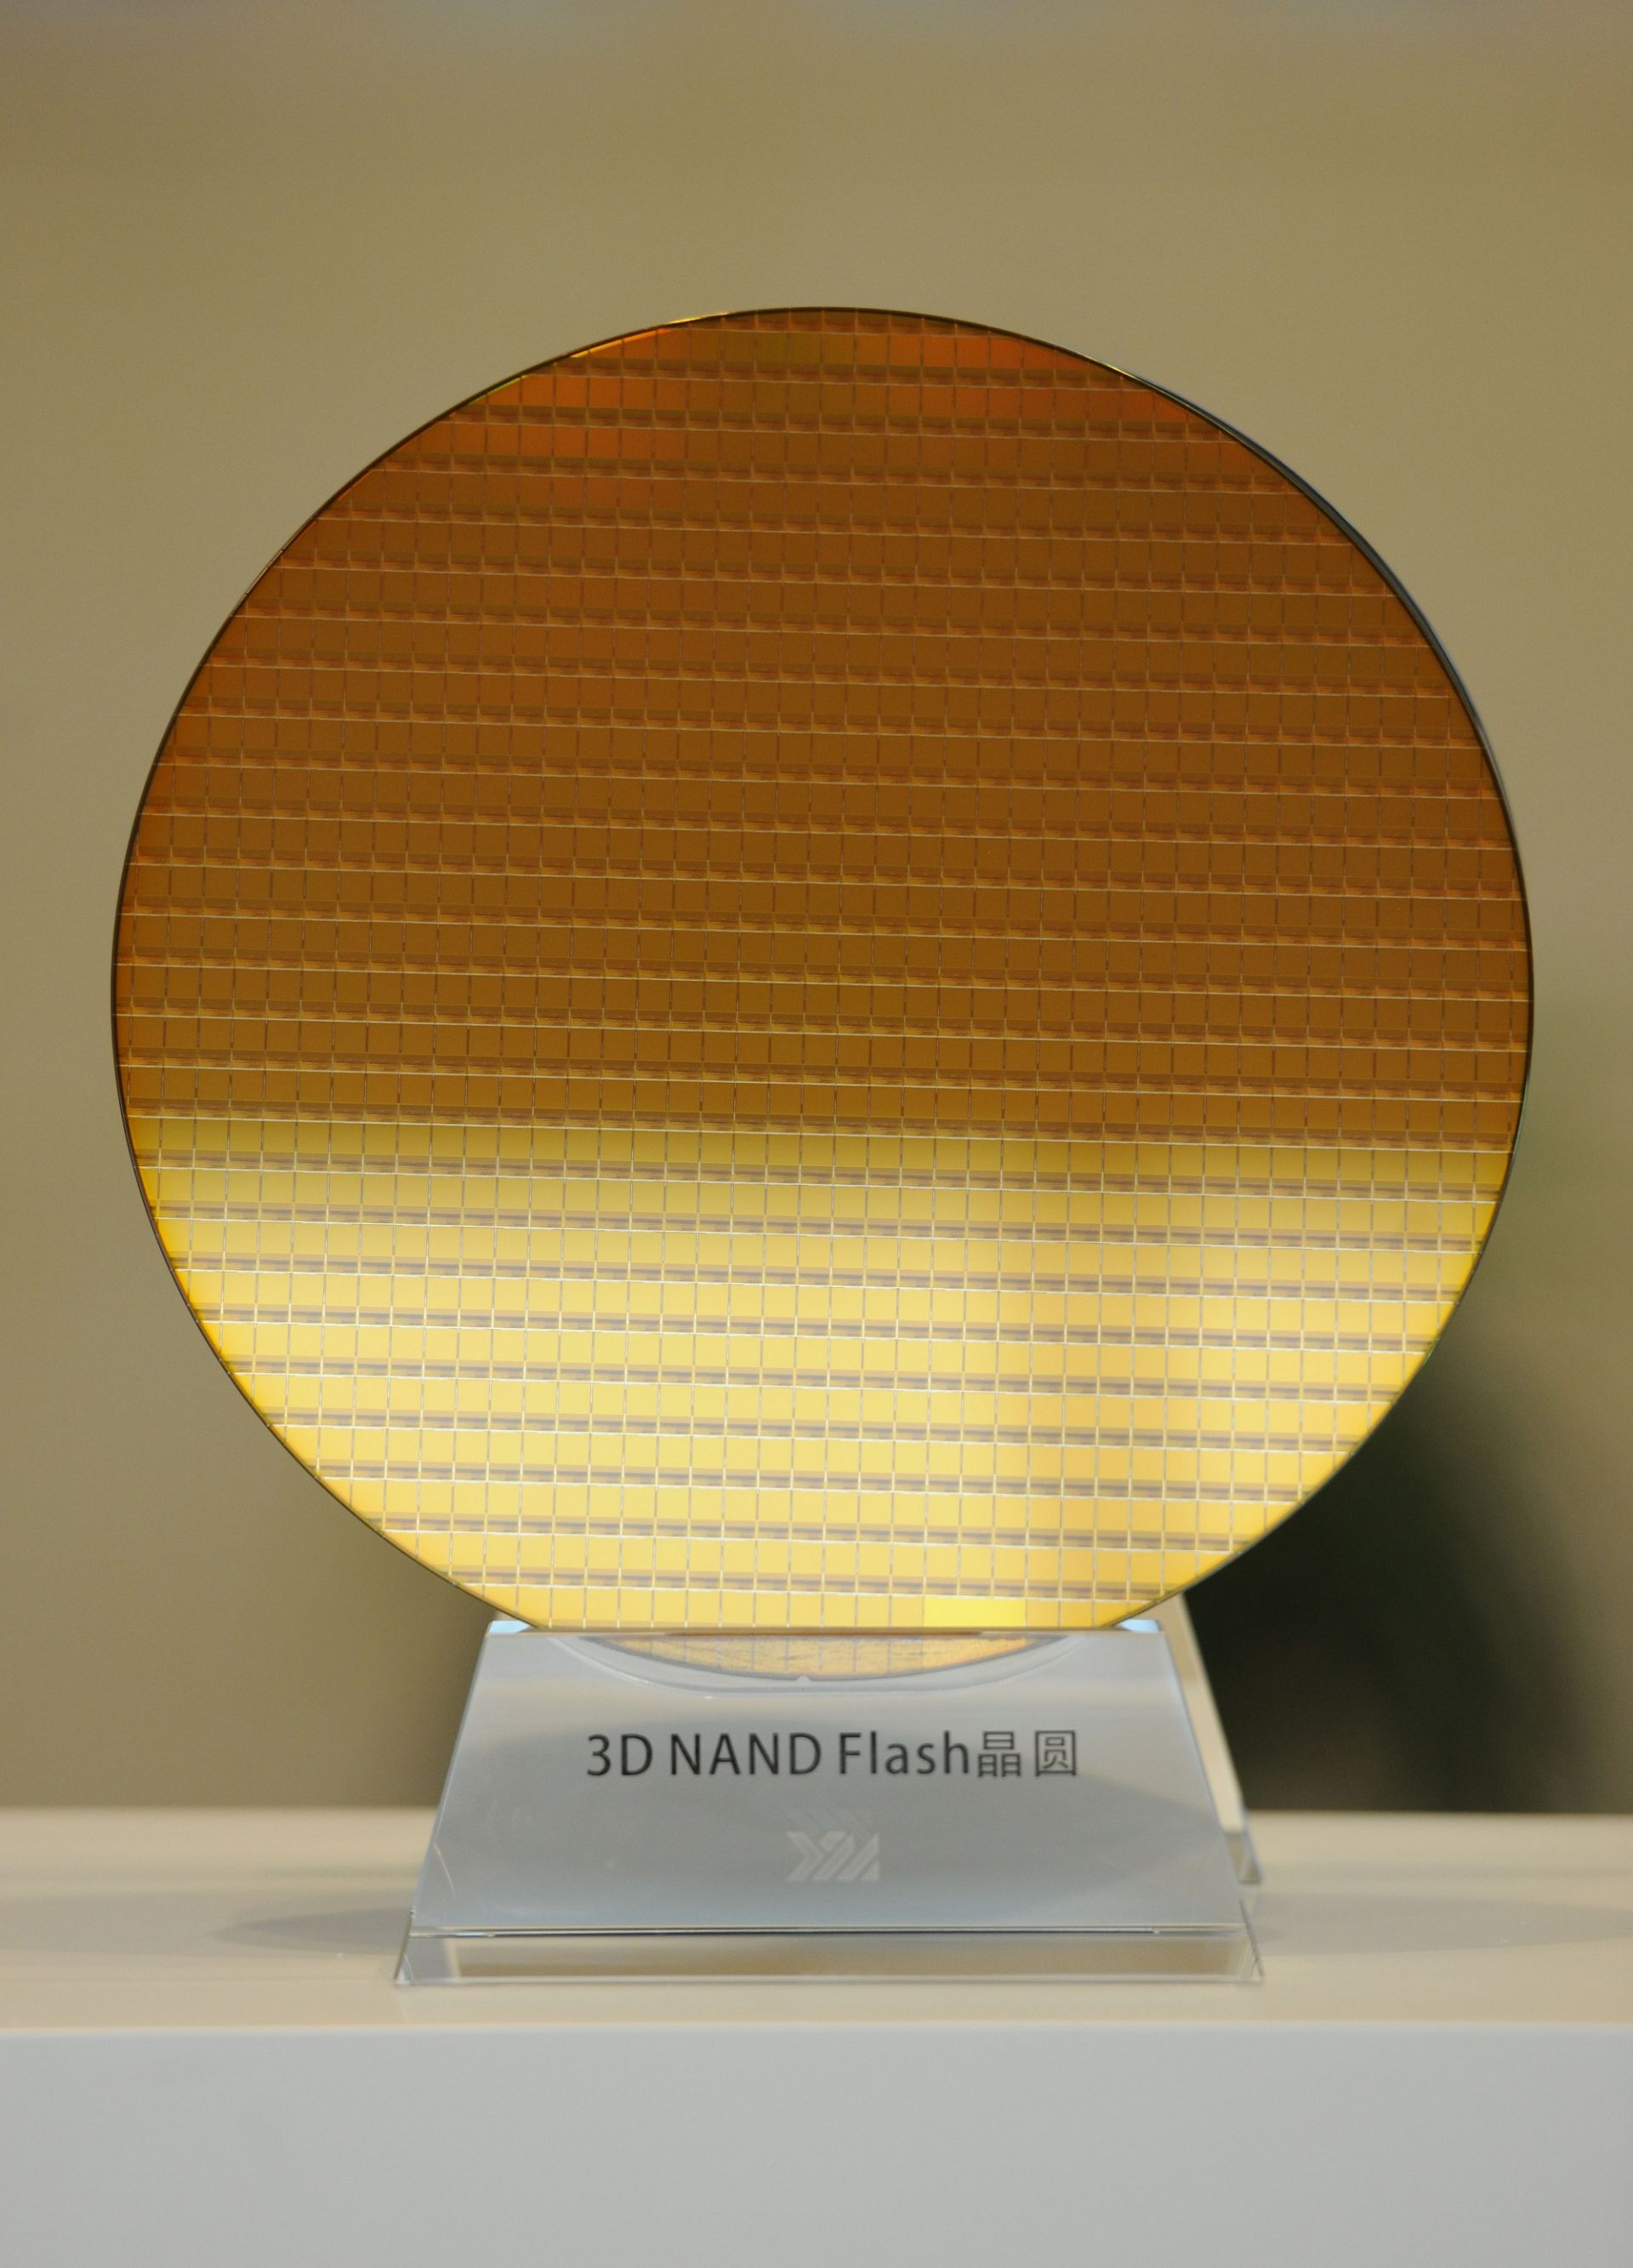 国家存储器基地长江存储生产的3d nand flash晶圆